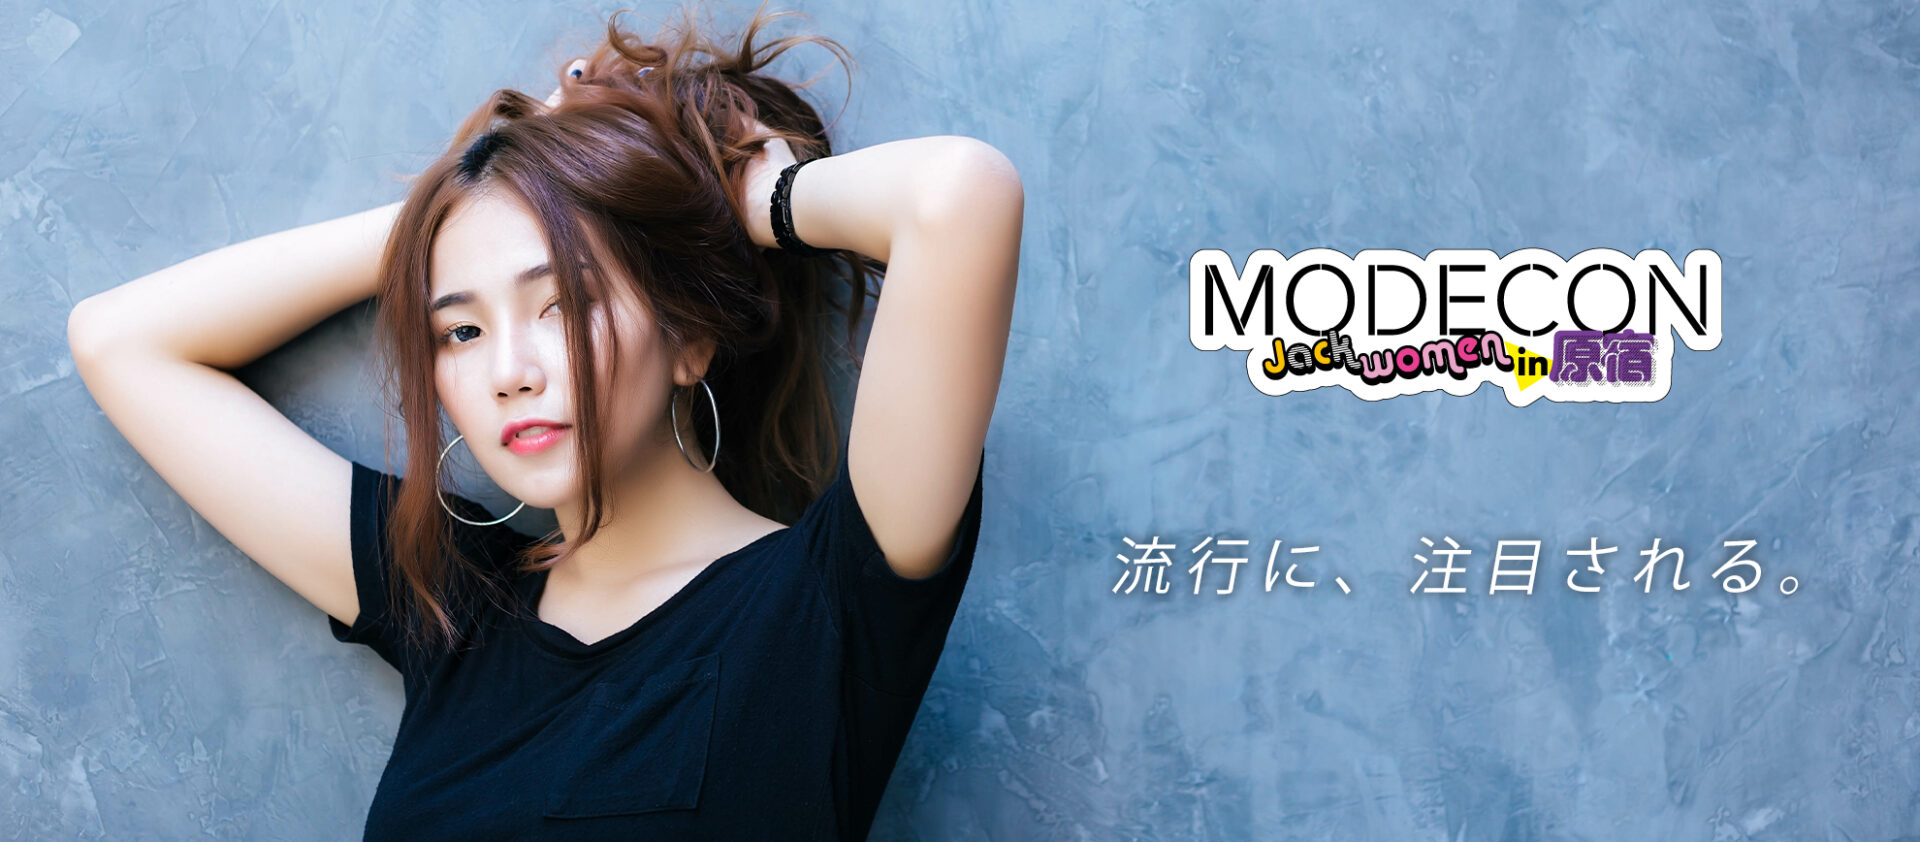 MODECON / Jack women in 原宿メイン画像